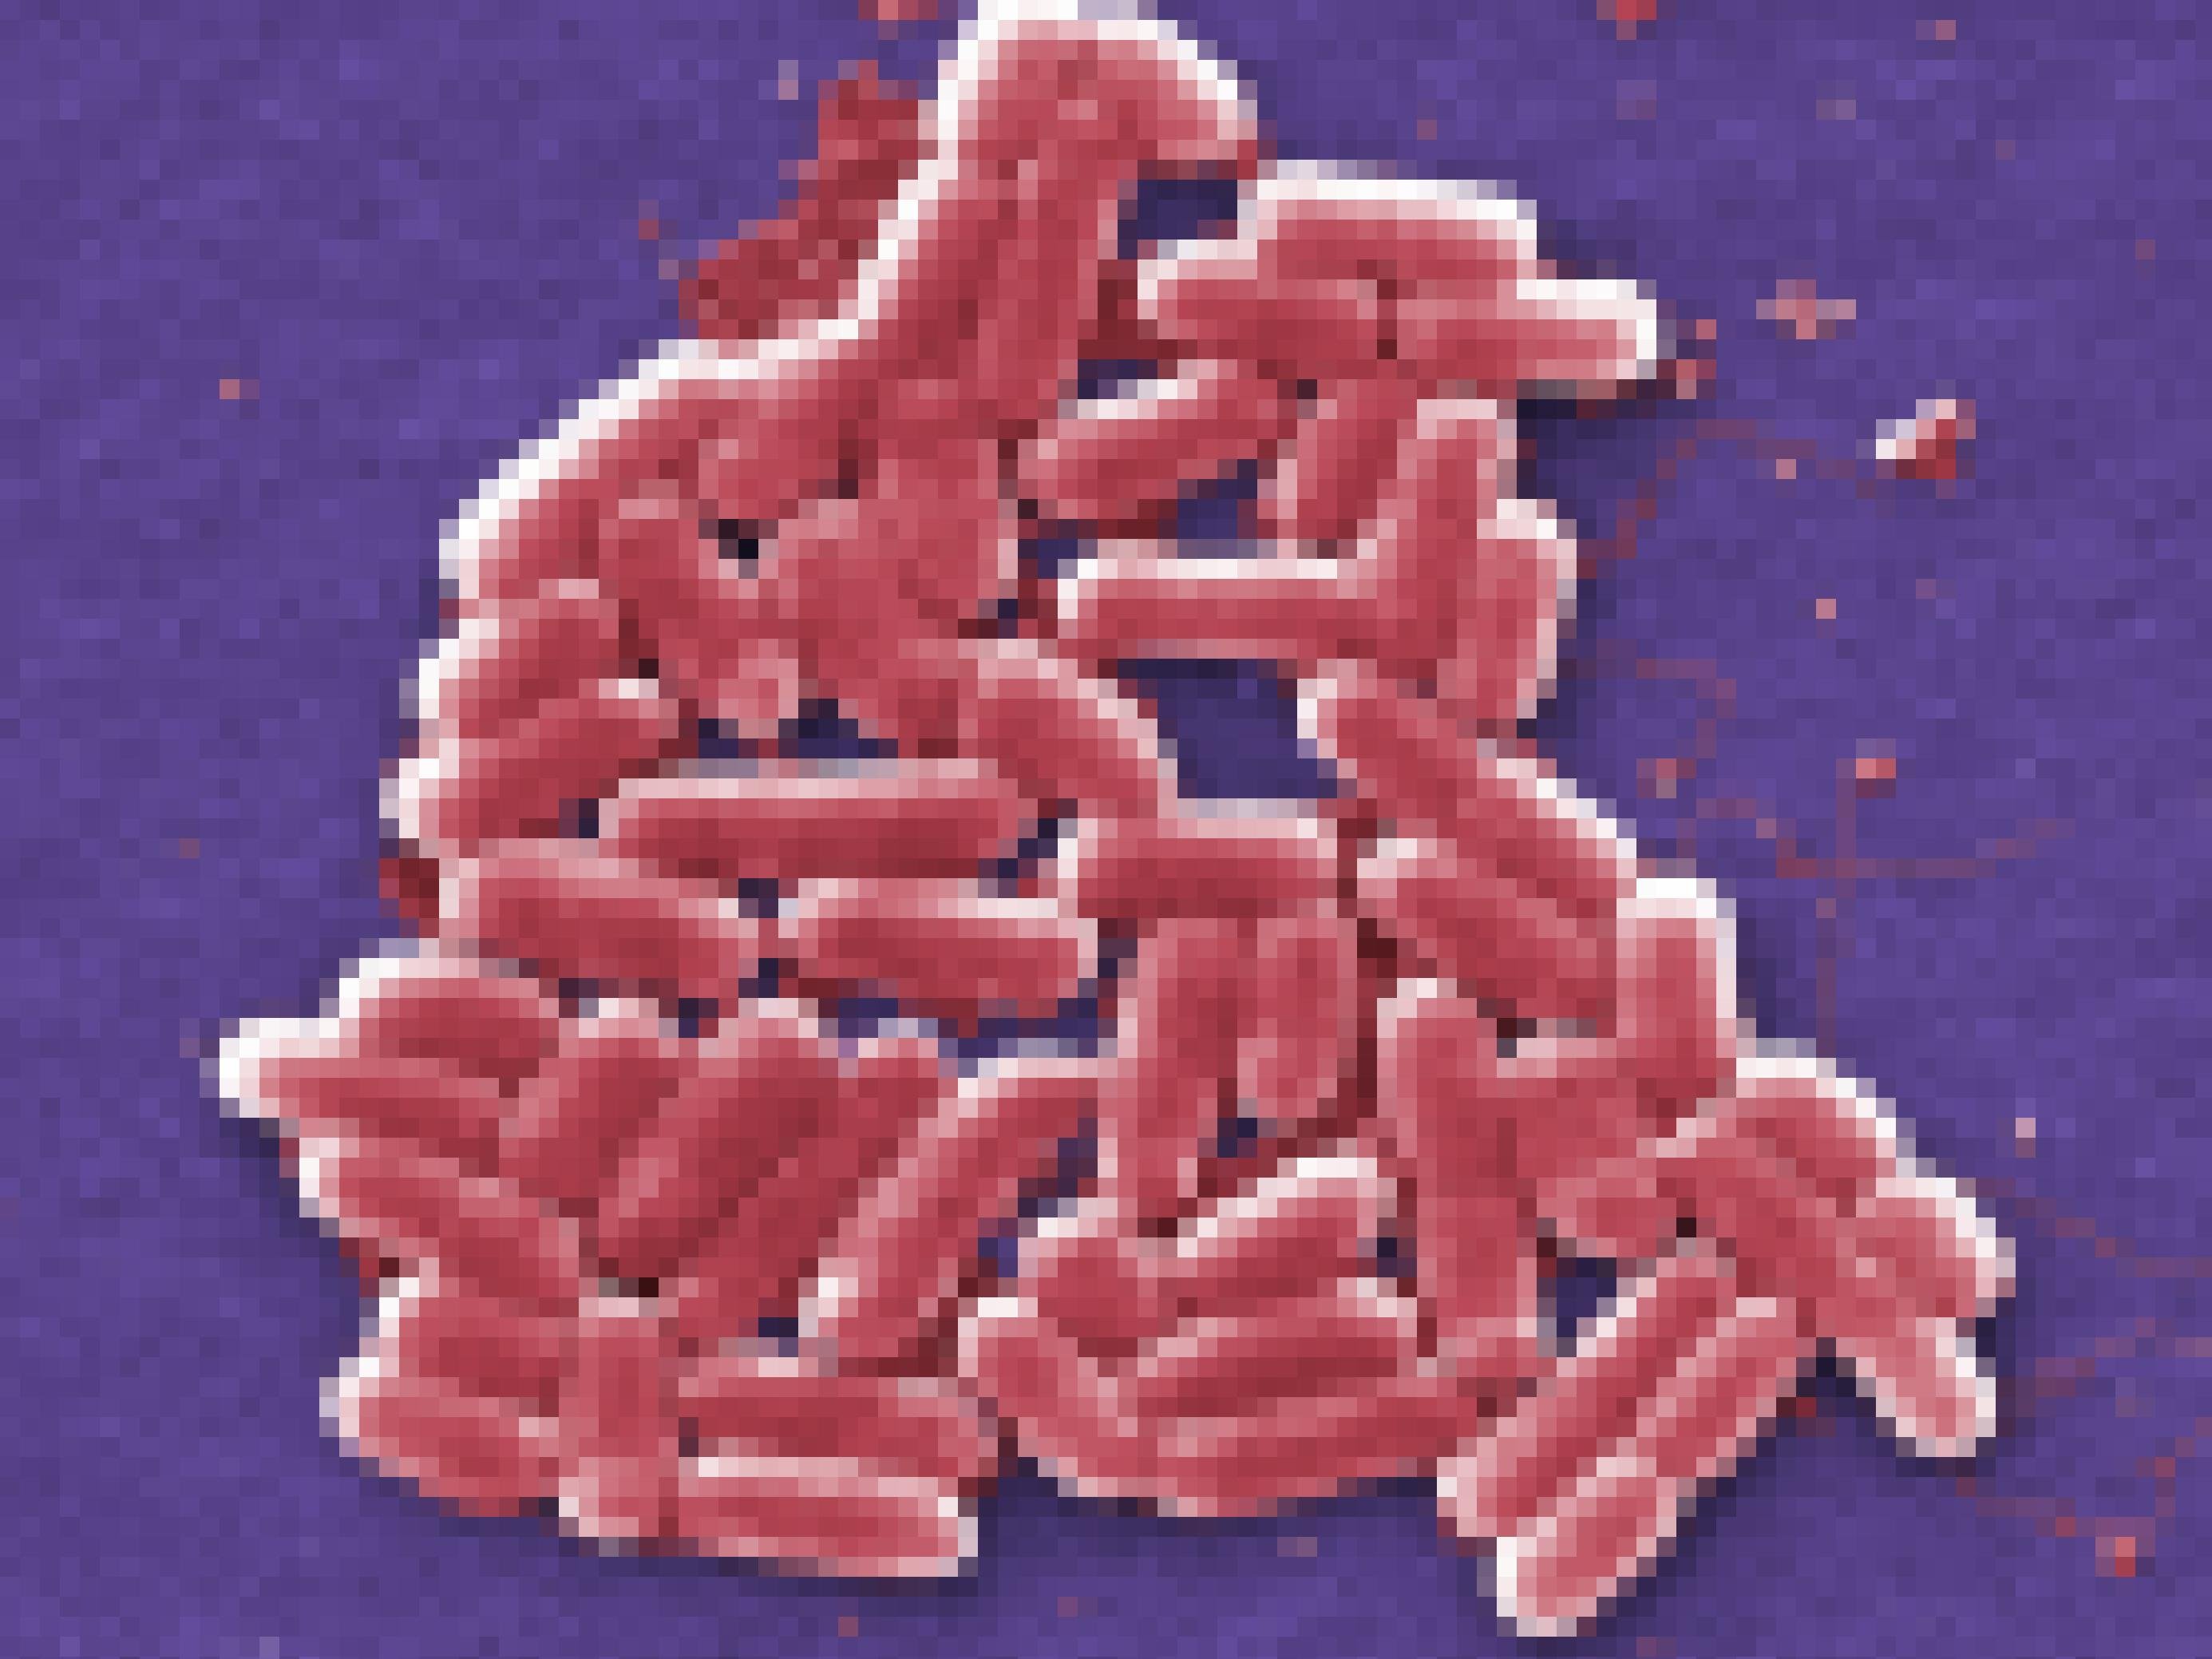 Die Bakterien haben die Form länglicher Tabletten mit runden Enden, gezeigt wird eine kleine Ansammlung.